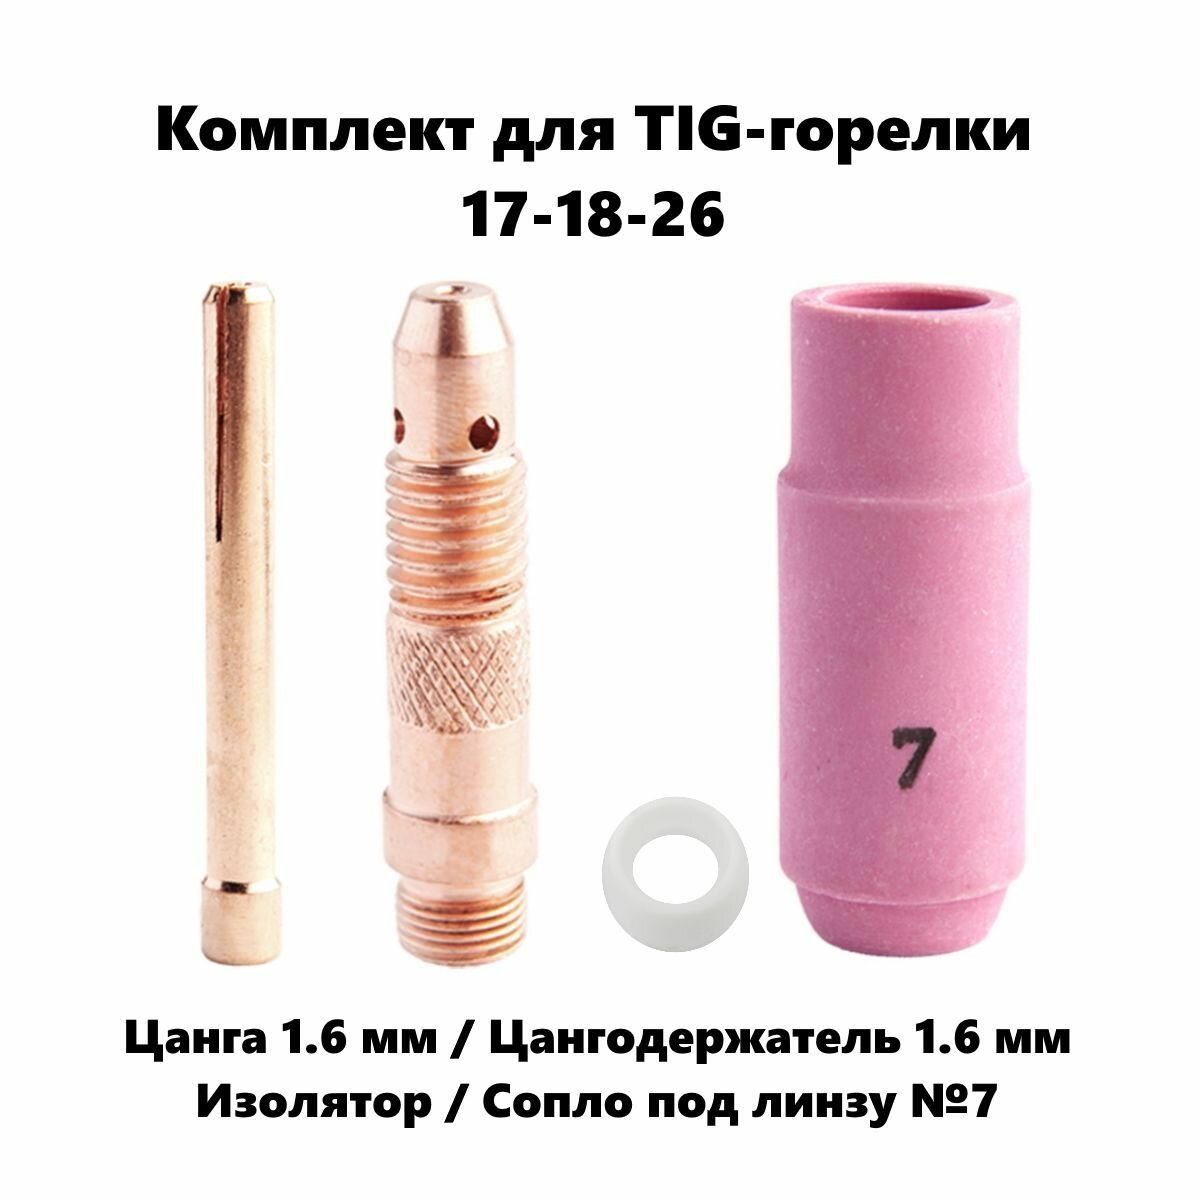 Набор 1.6 мм цанга Сопло керамическое №7 цангодержатель изолятор для TIG горелки (17-18-26)